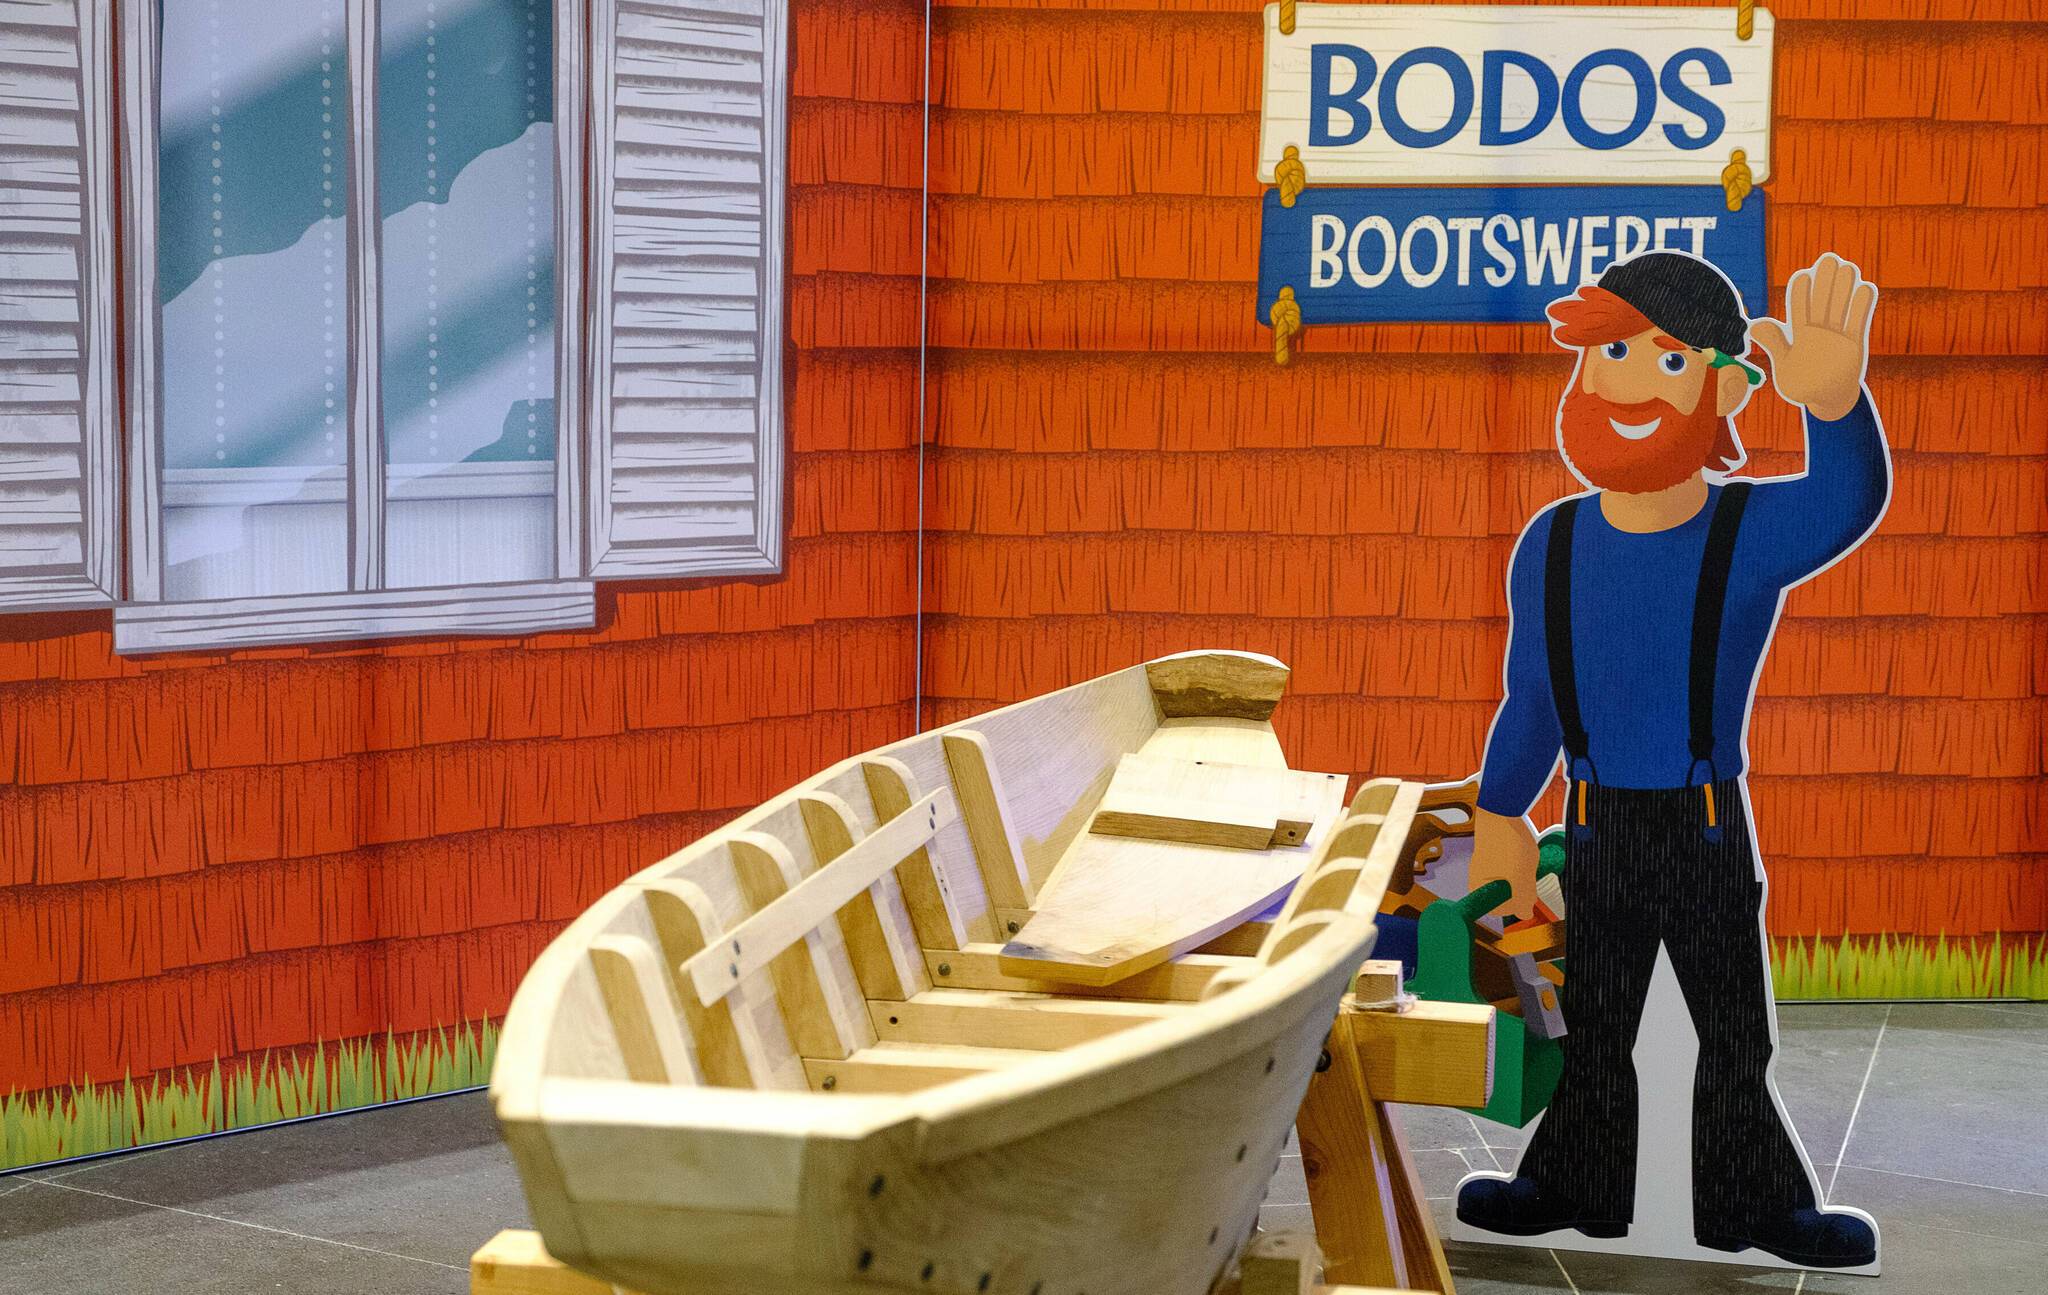 Die Ausstellung „Bodos Bootswerft“ lädt zum